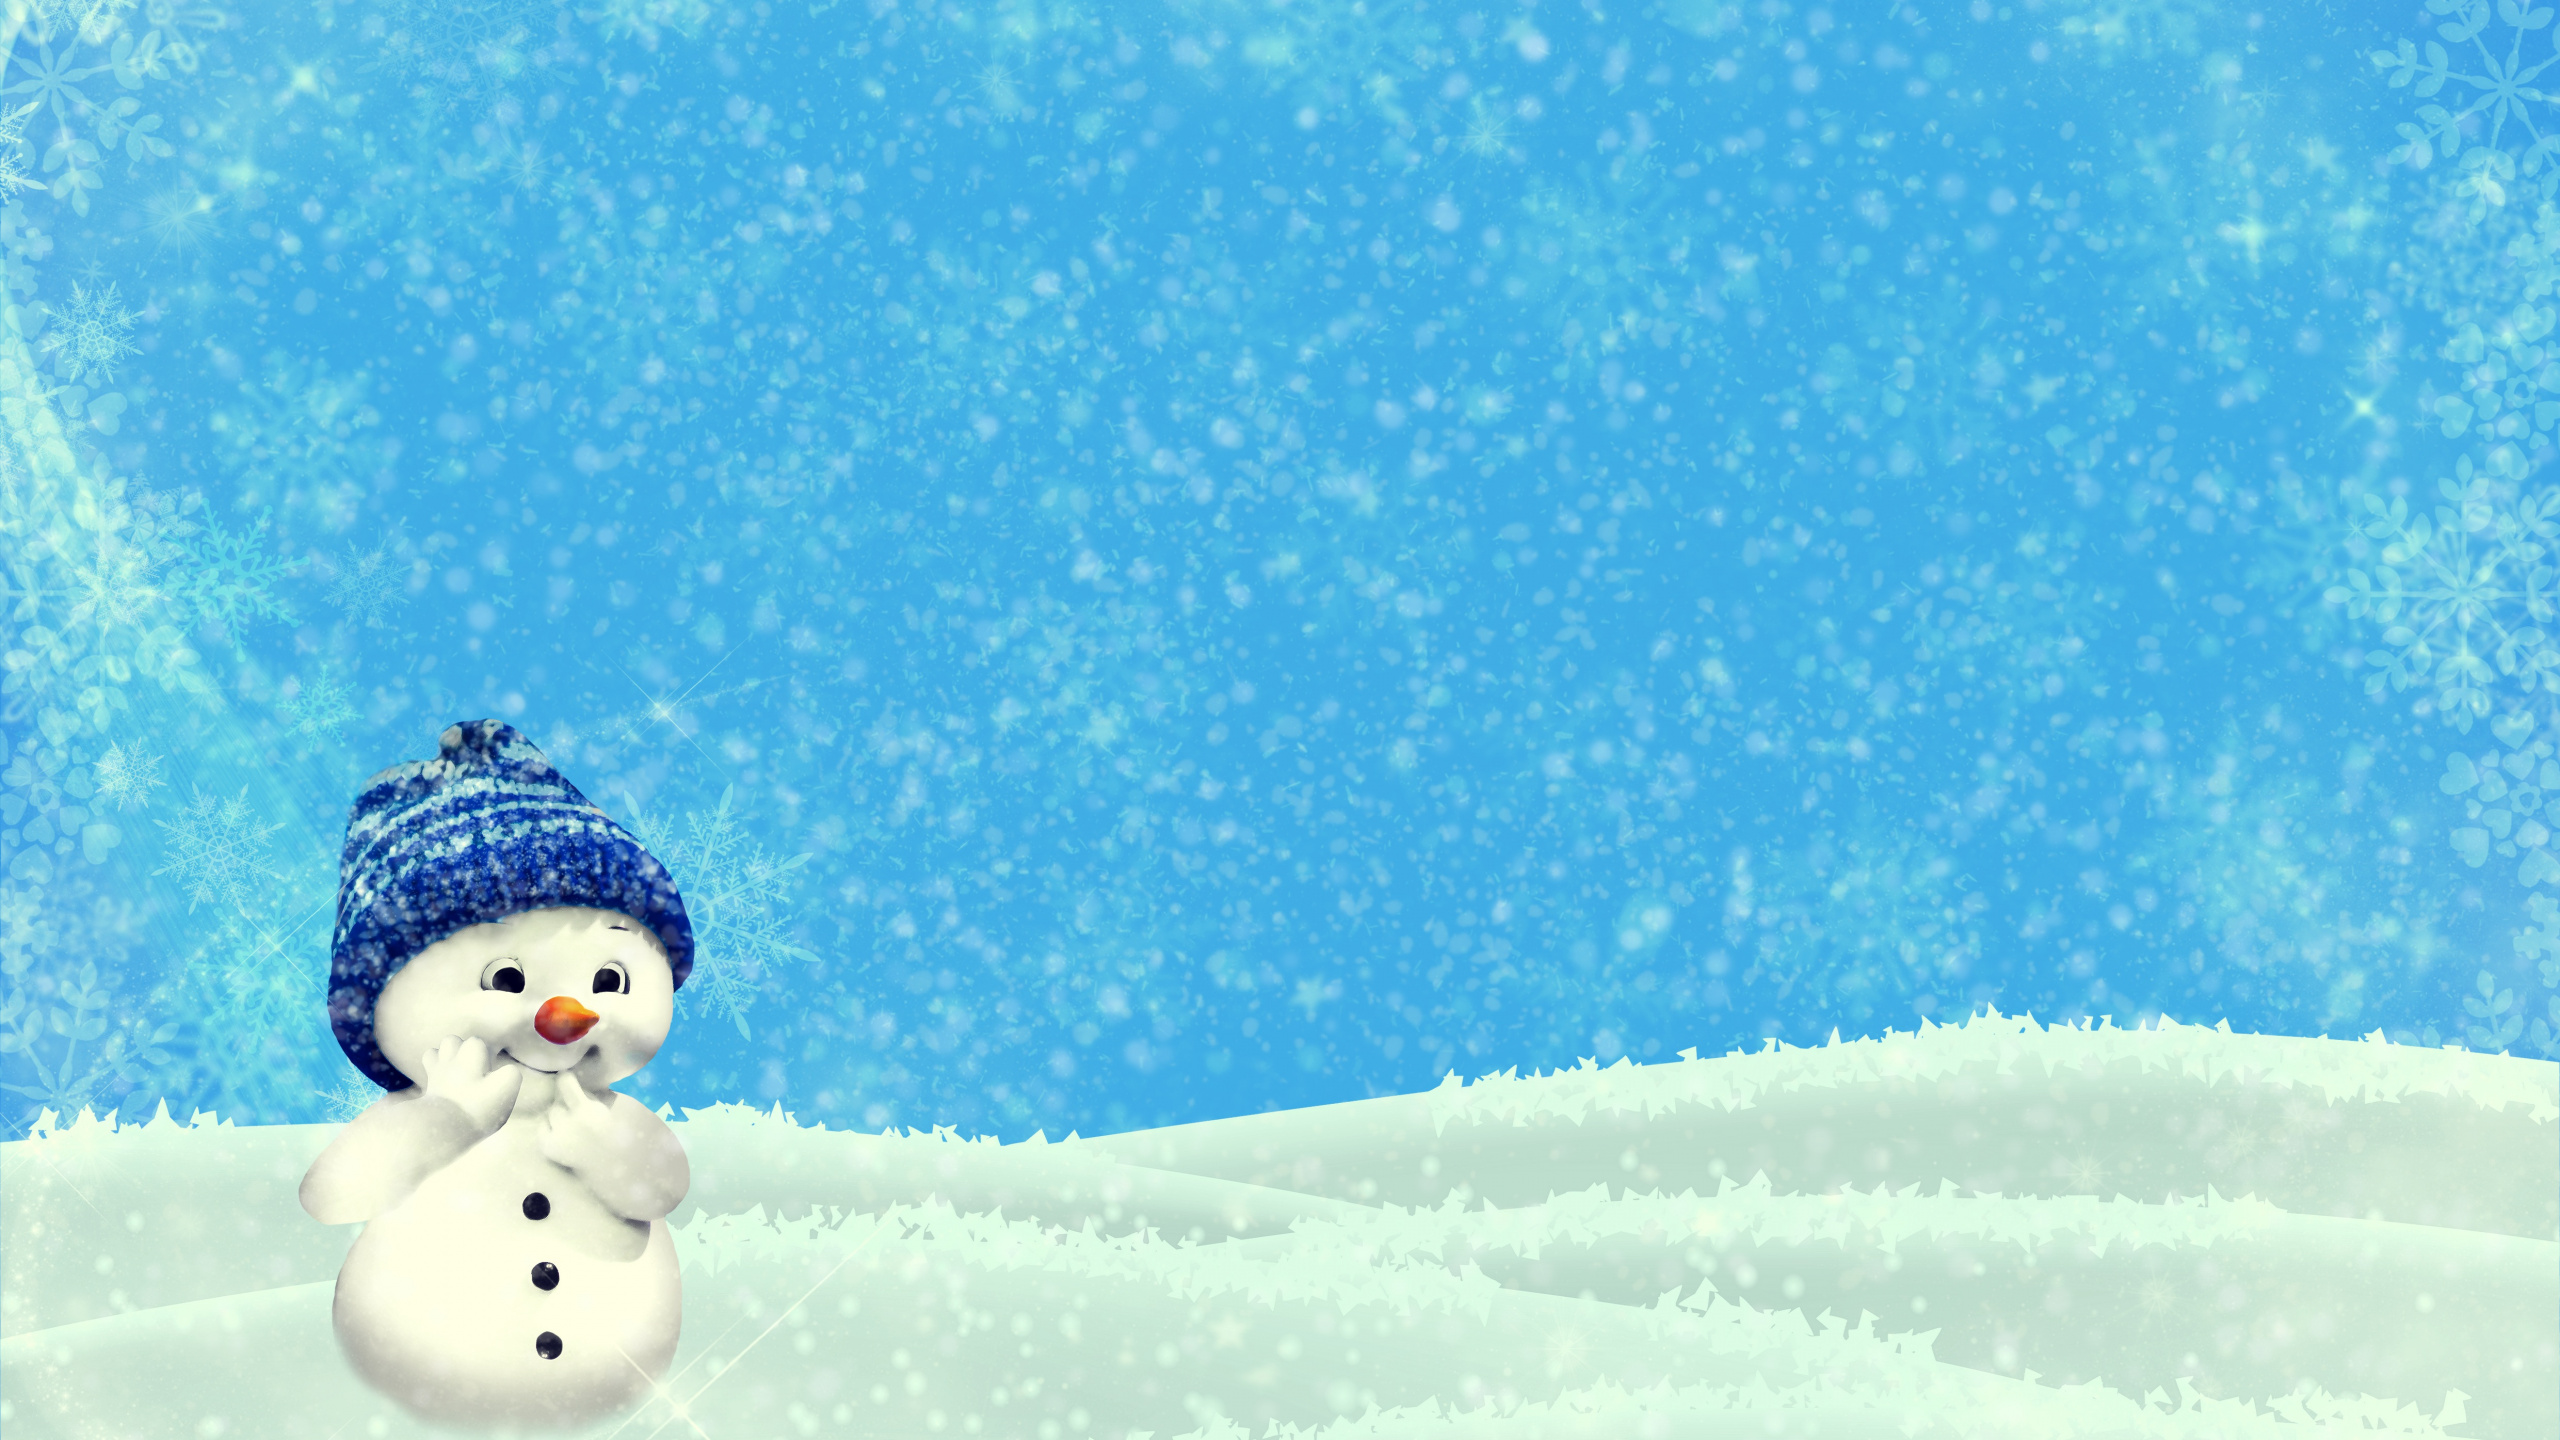 雪人, 圣诞节那天, 冬天, 冻结, 雪花 壁纸 2560x1440 允许